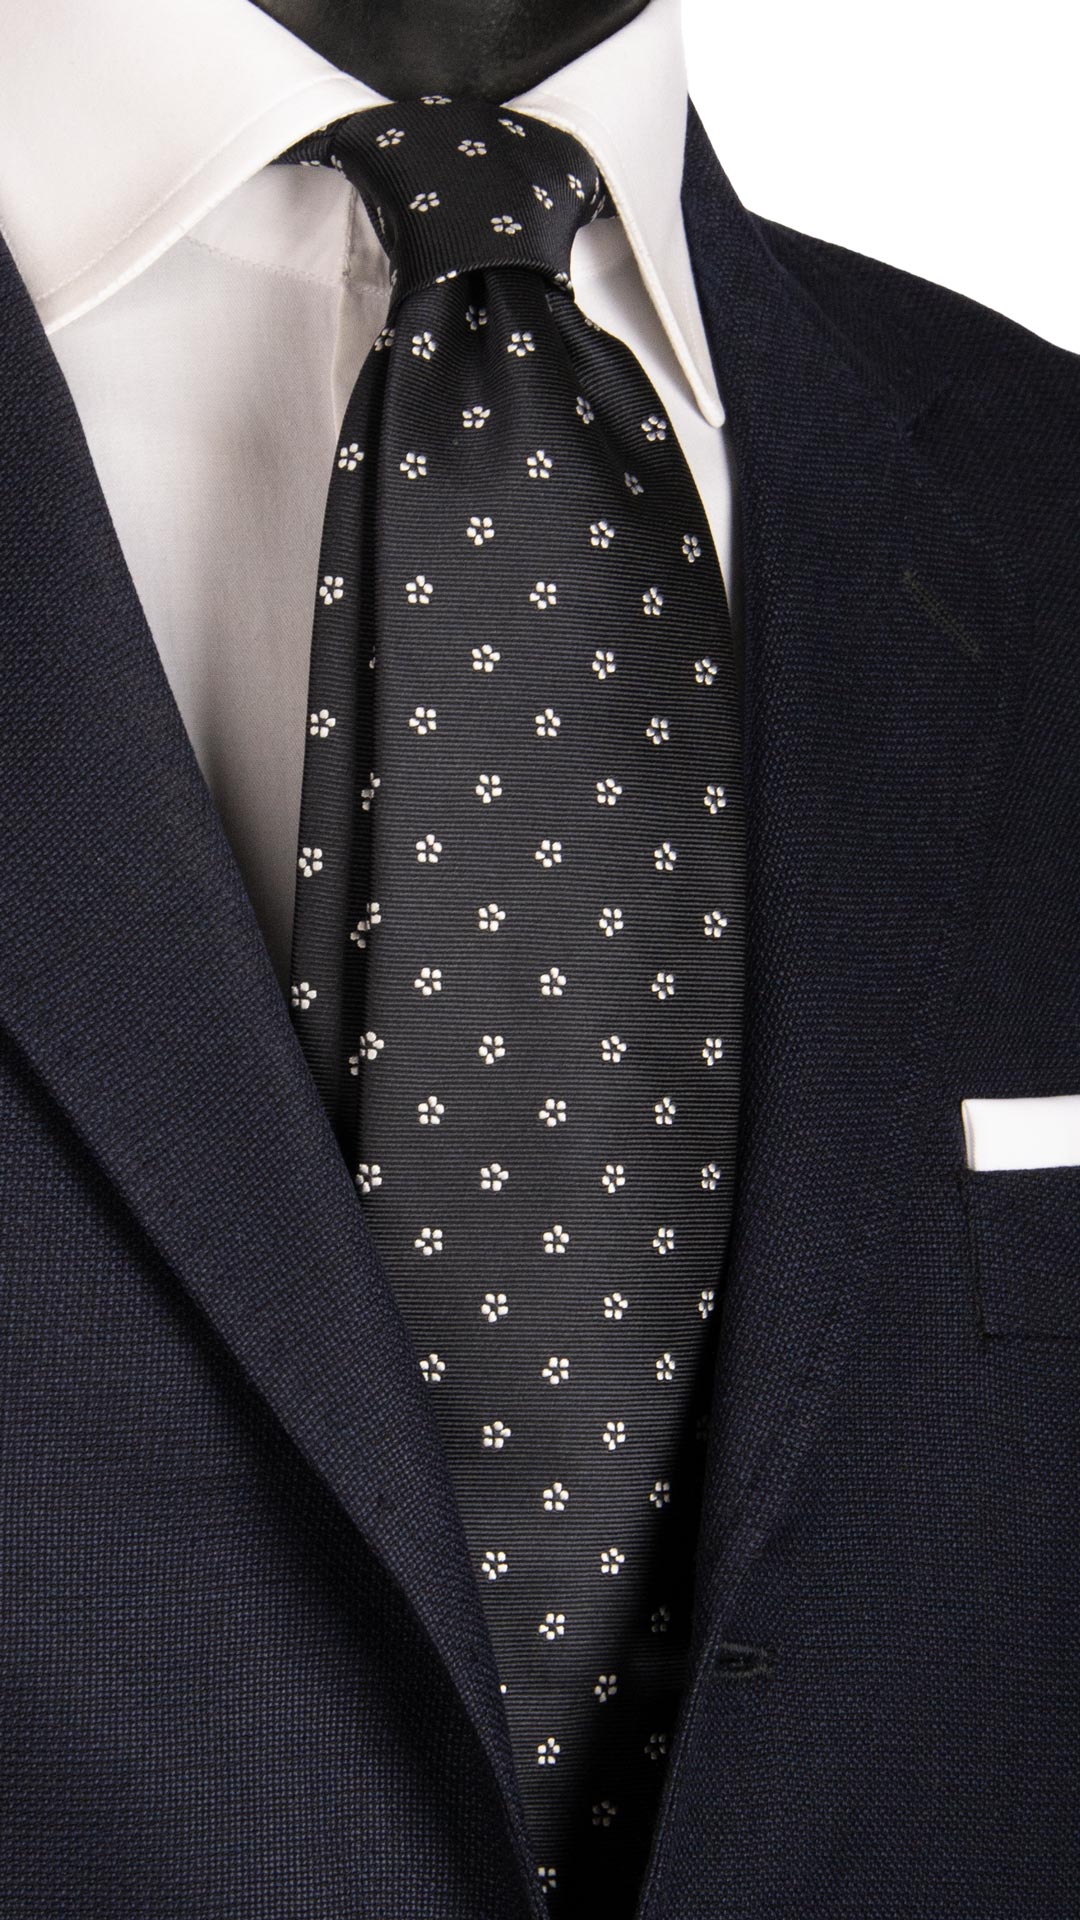 Cravatta da Cerimonia di Seta Blu a Fiori Bianchi Made in Italy Graffeo Cravatte